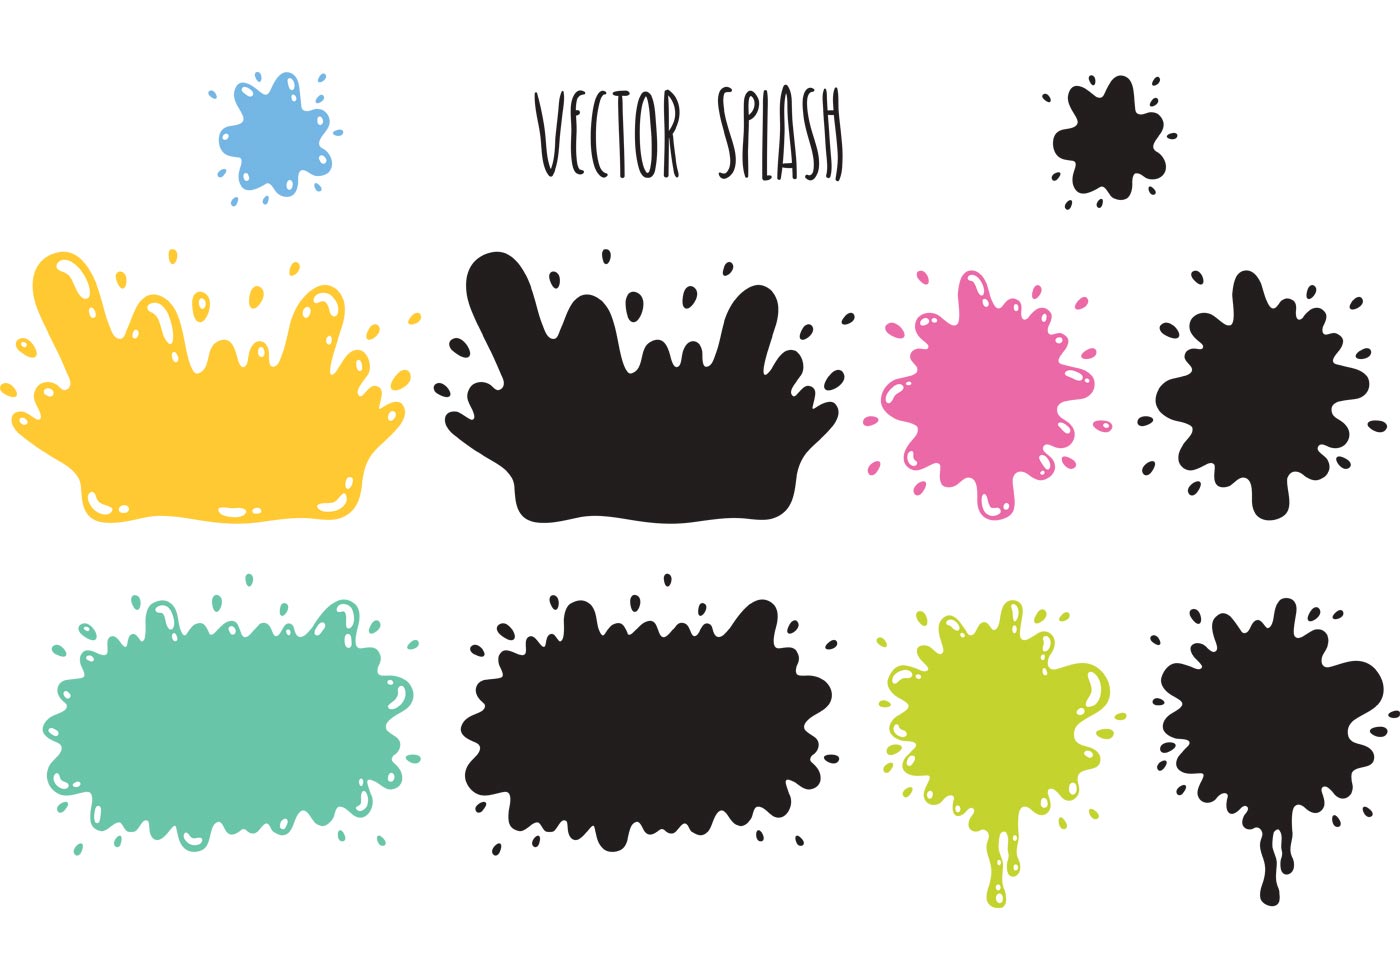 Splash Vectors - Download Free Vector Art, Stock Graphics & Images